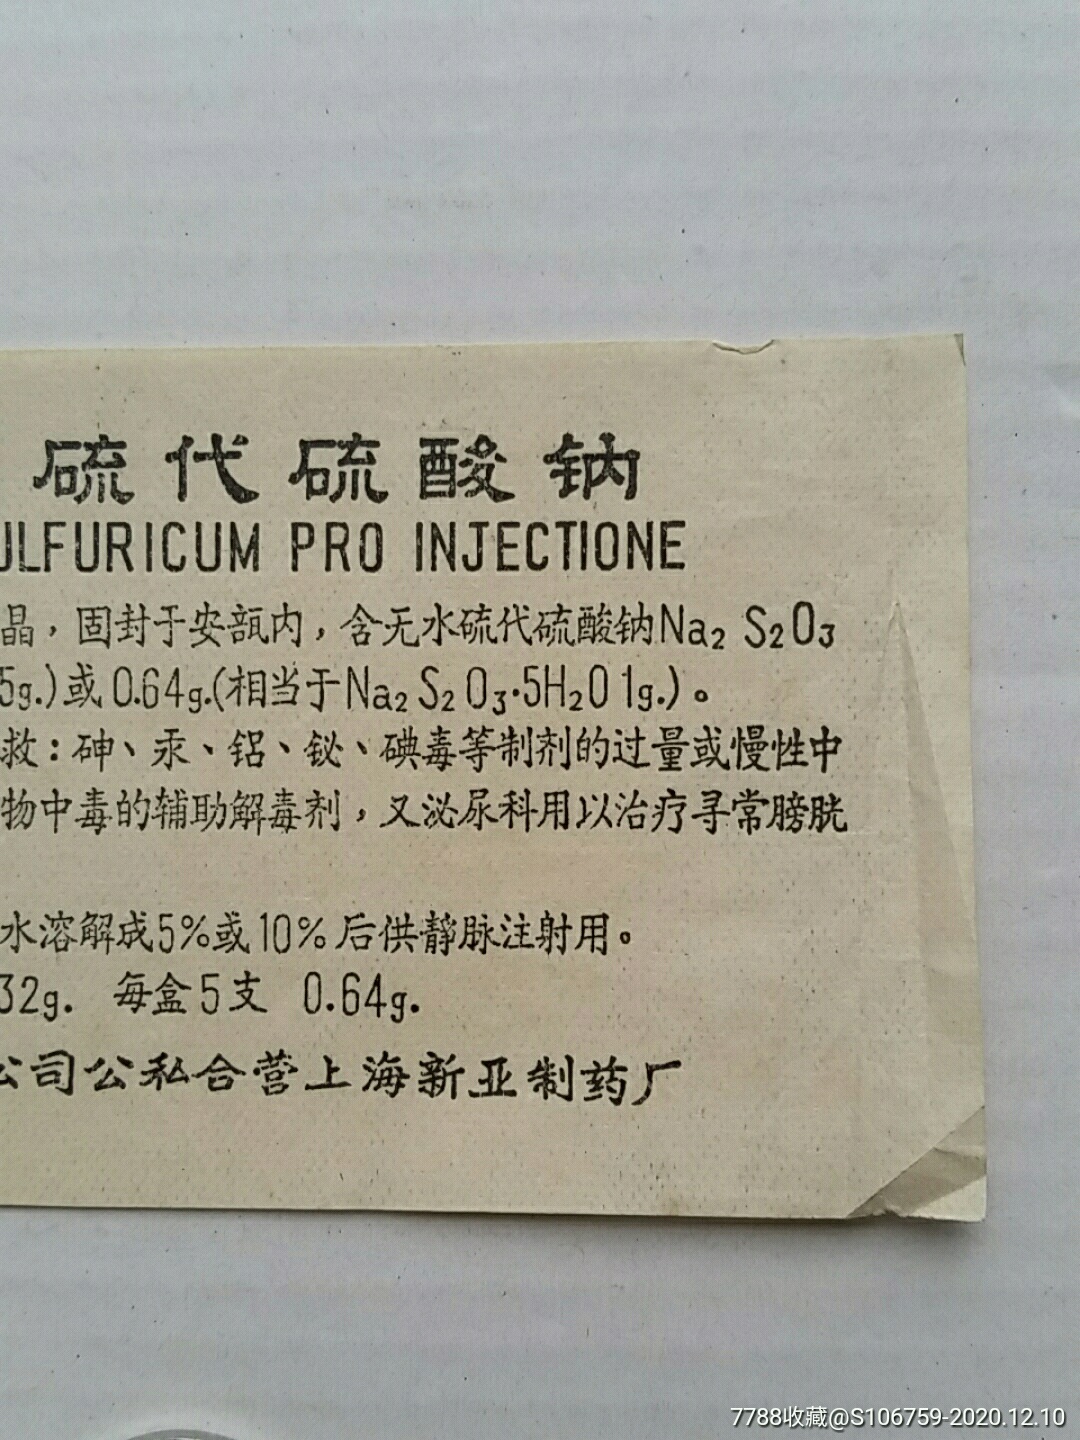 注射用硫代硫酸钠药说明书公私合营上海新亚制药厂